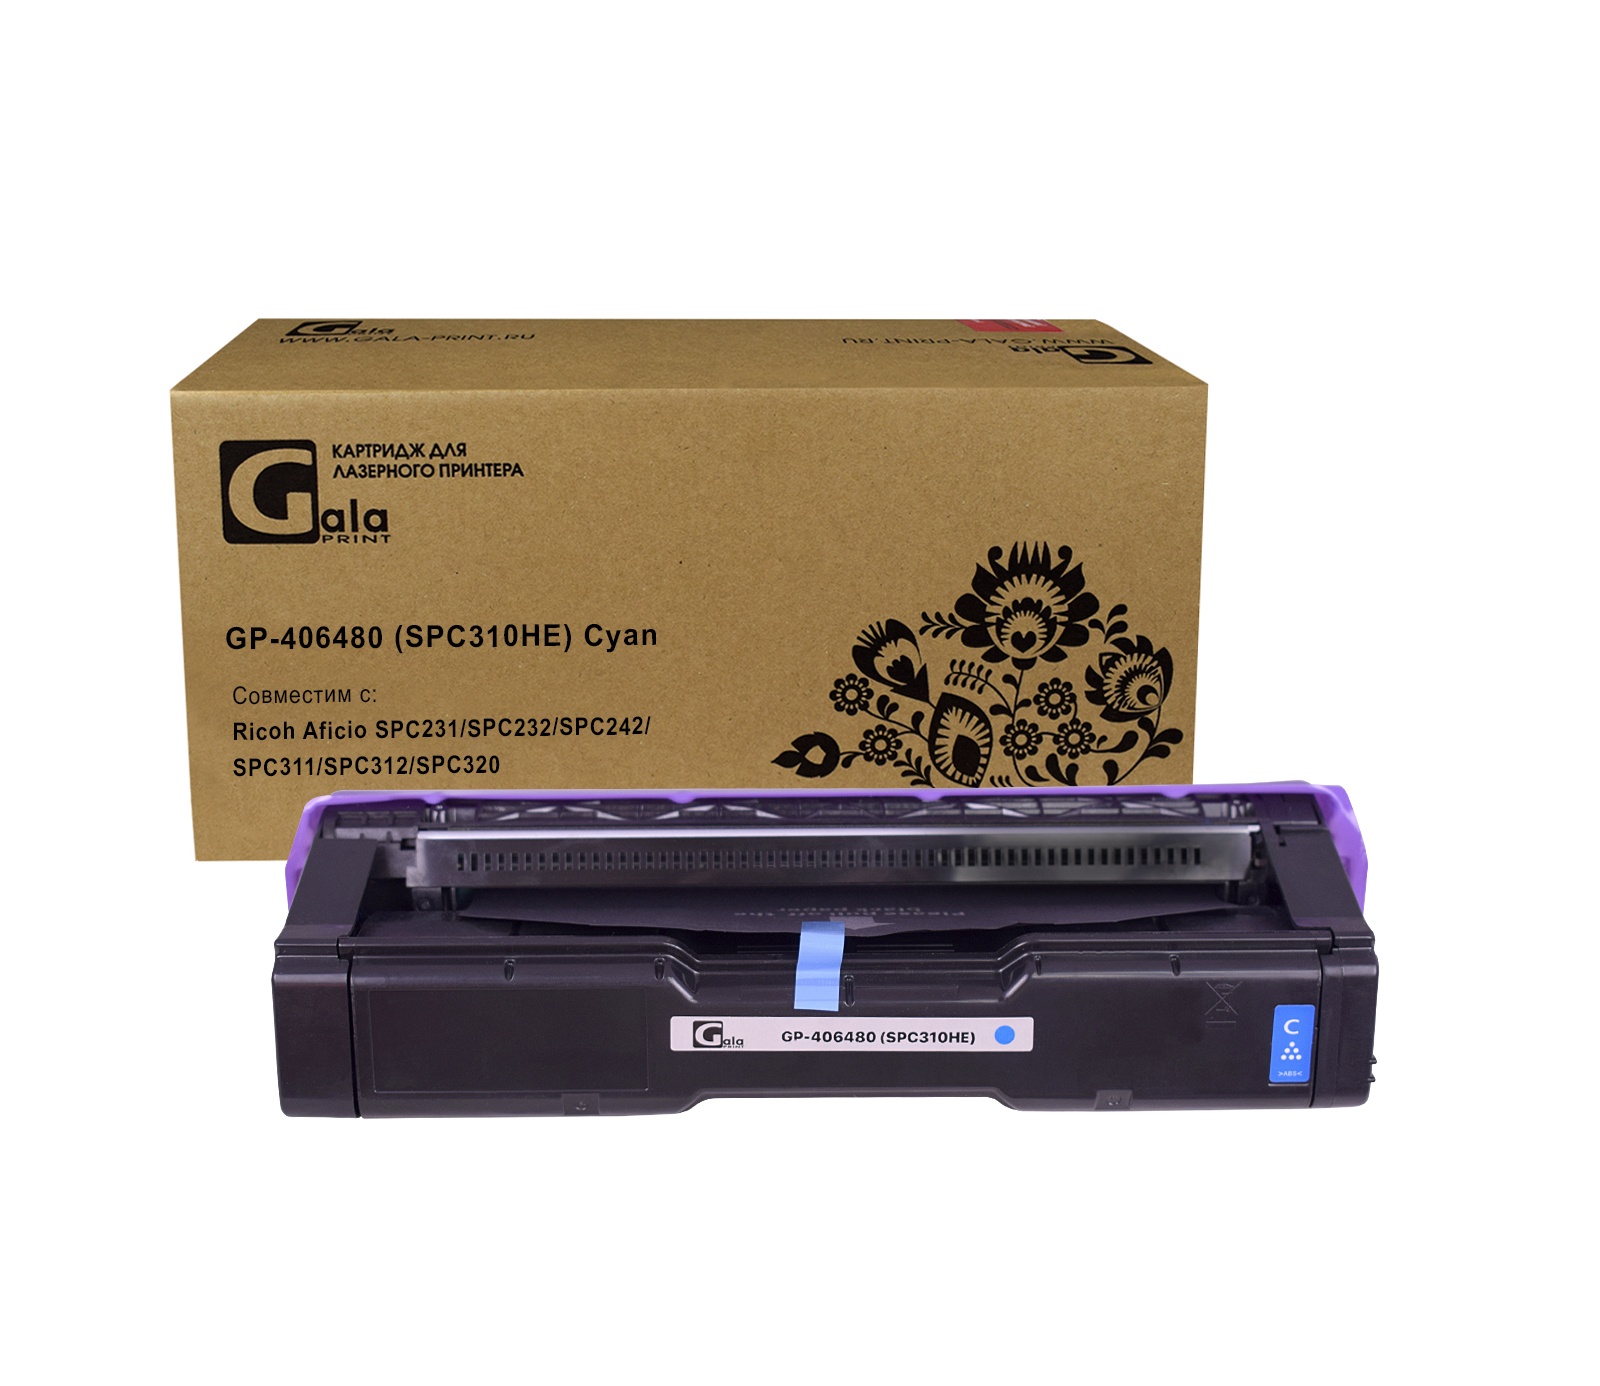 Картридж GP-406480 (SPC310HE) для принтеров Ricoh Aficio SPC231/SPC232/SPC242/SPC311/SPC312/SPC320 Cyan 6000 копий GalaPrint